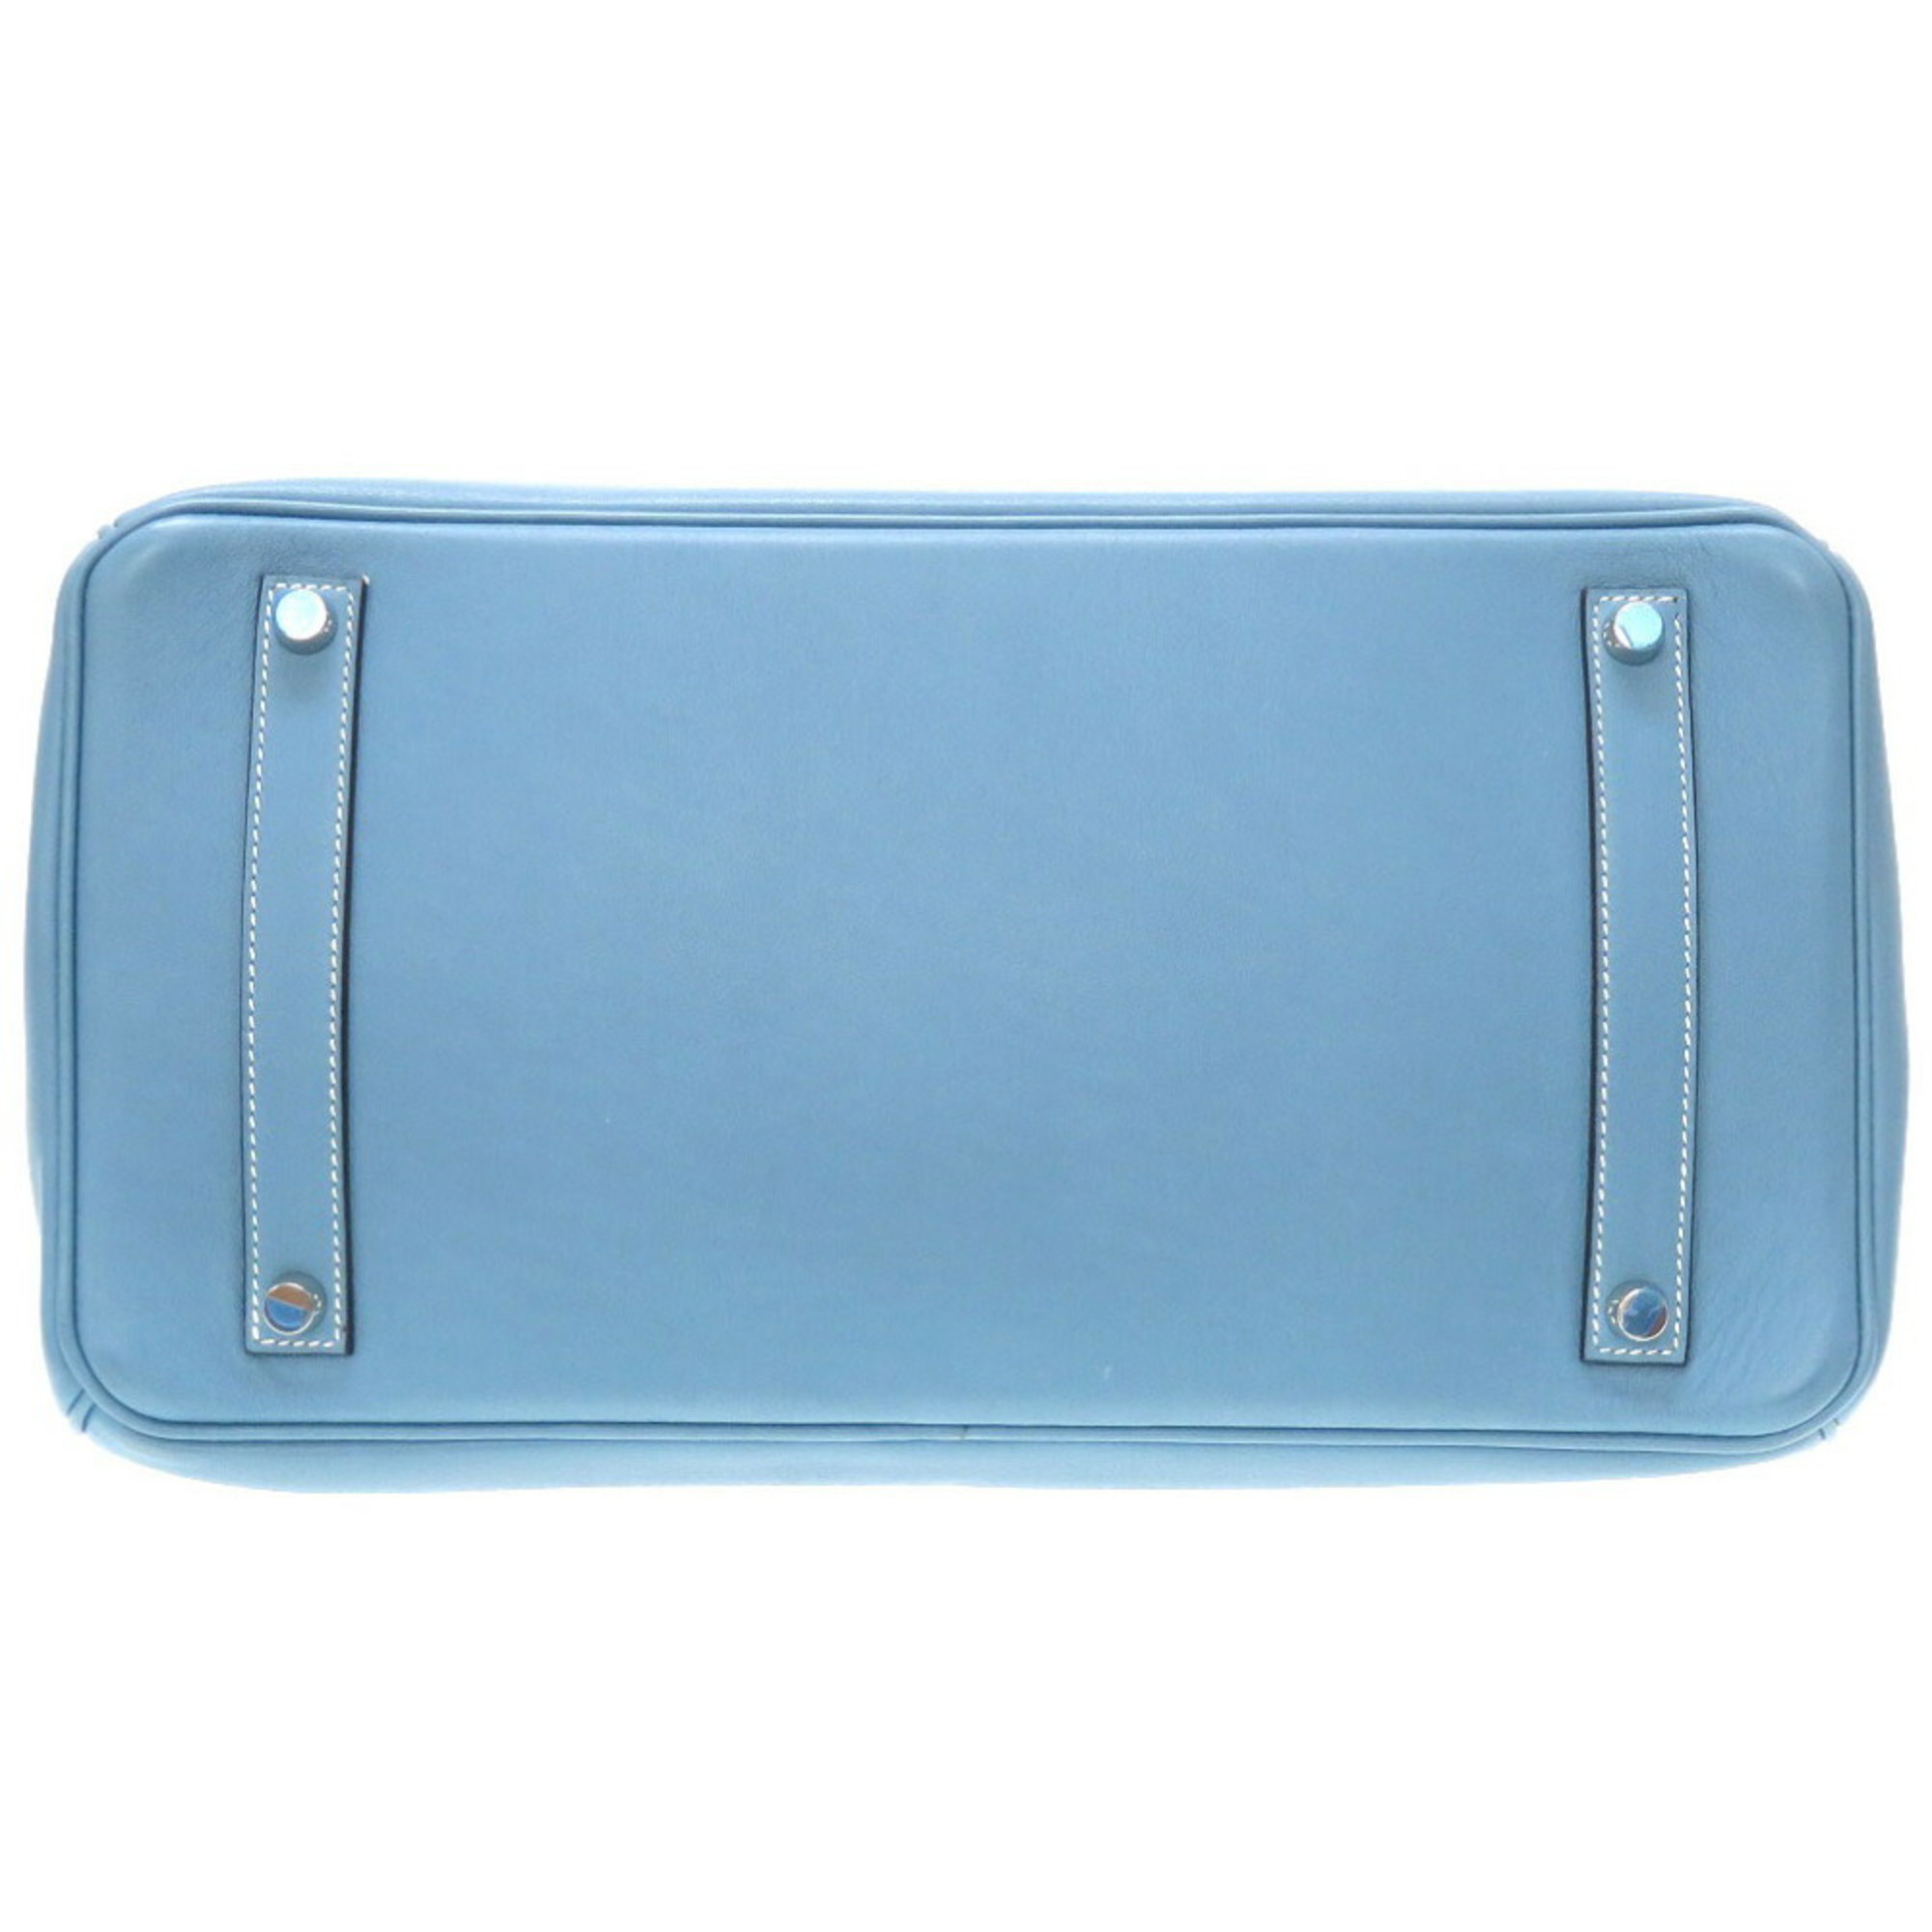 Hermes Birkin 35 Voga River Blue Jean □J engraved handbag blue 0059 HERMES 6B0059LLS6